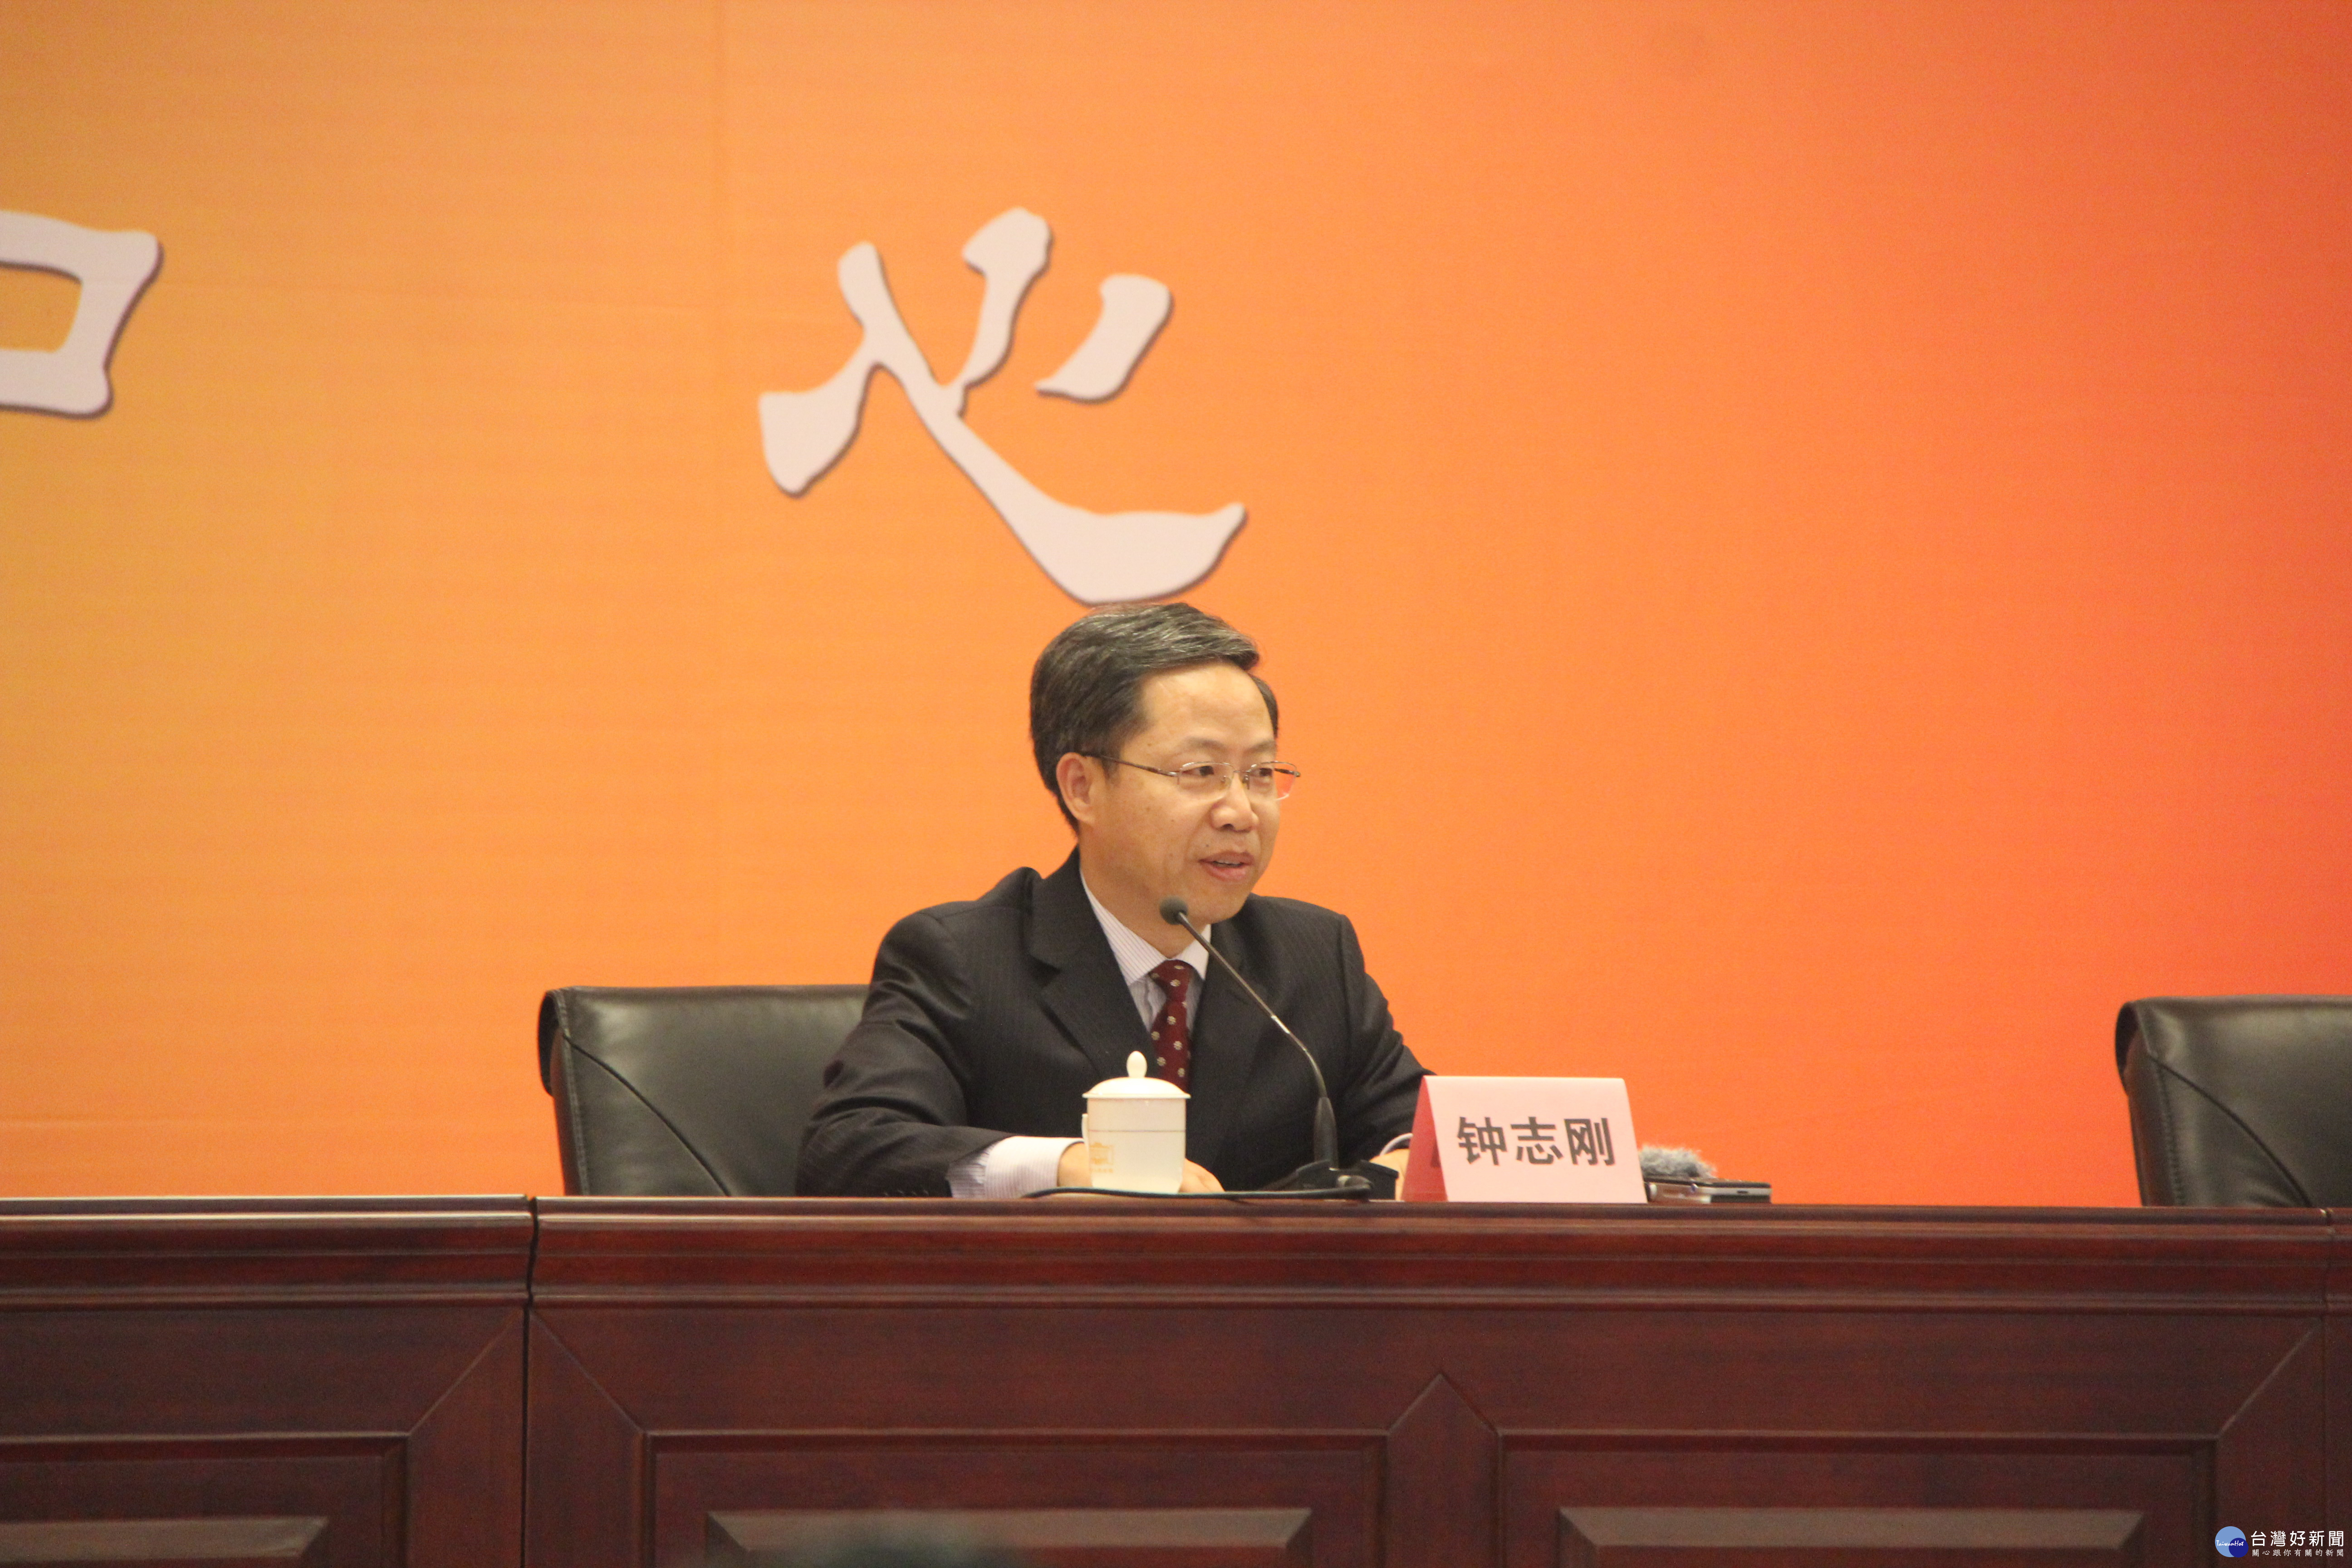 鍾志剛在新聞發佈會上對這次論壇的期許與具體措施。